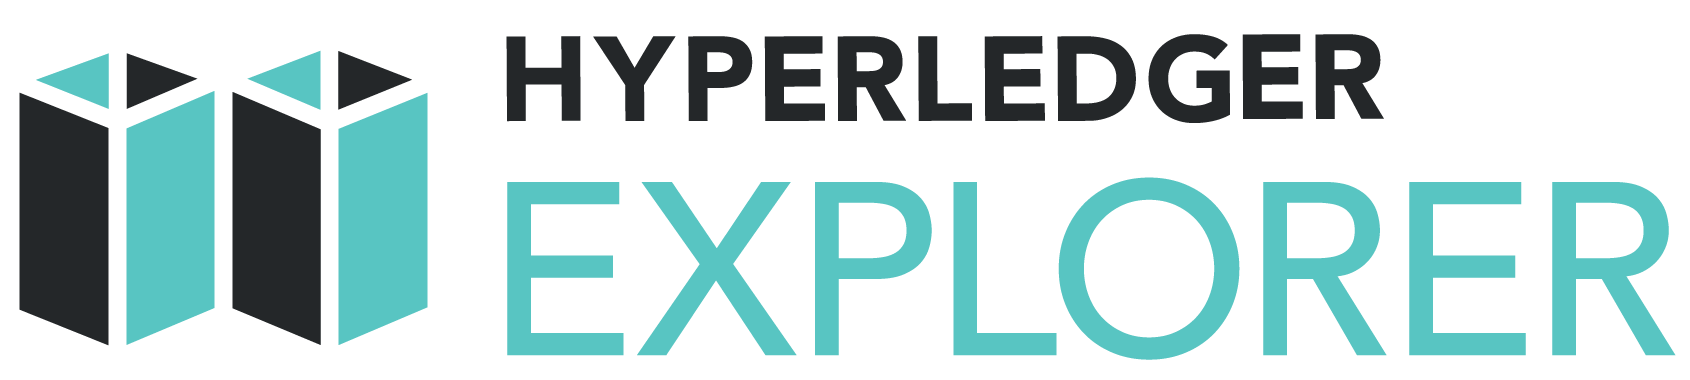 Hyperledger_Explorer_Logo_Color.png